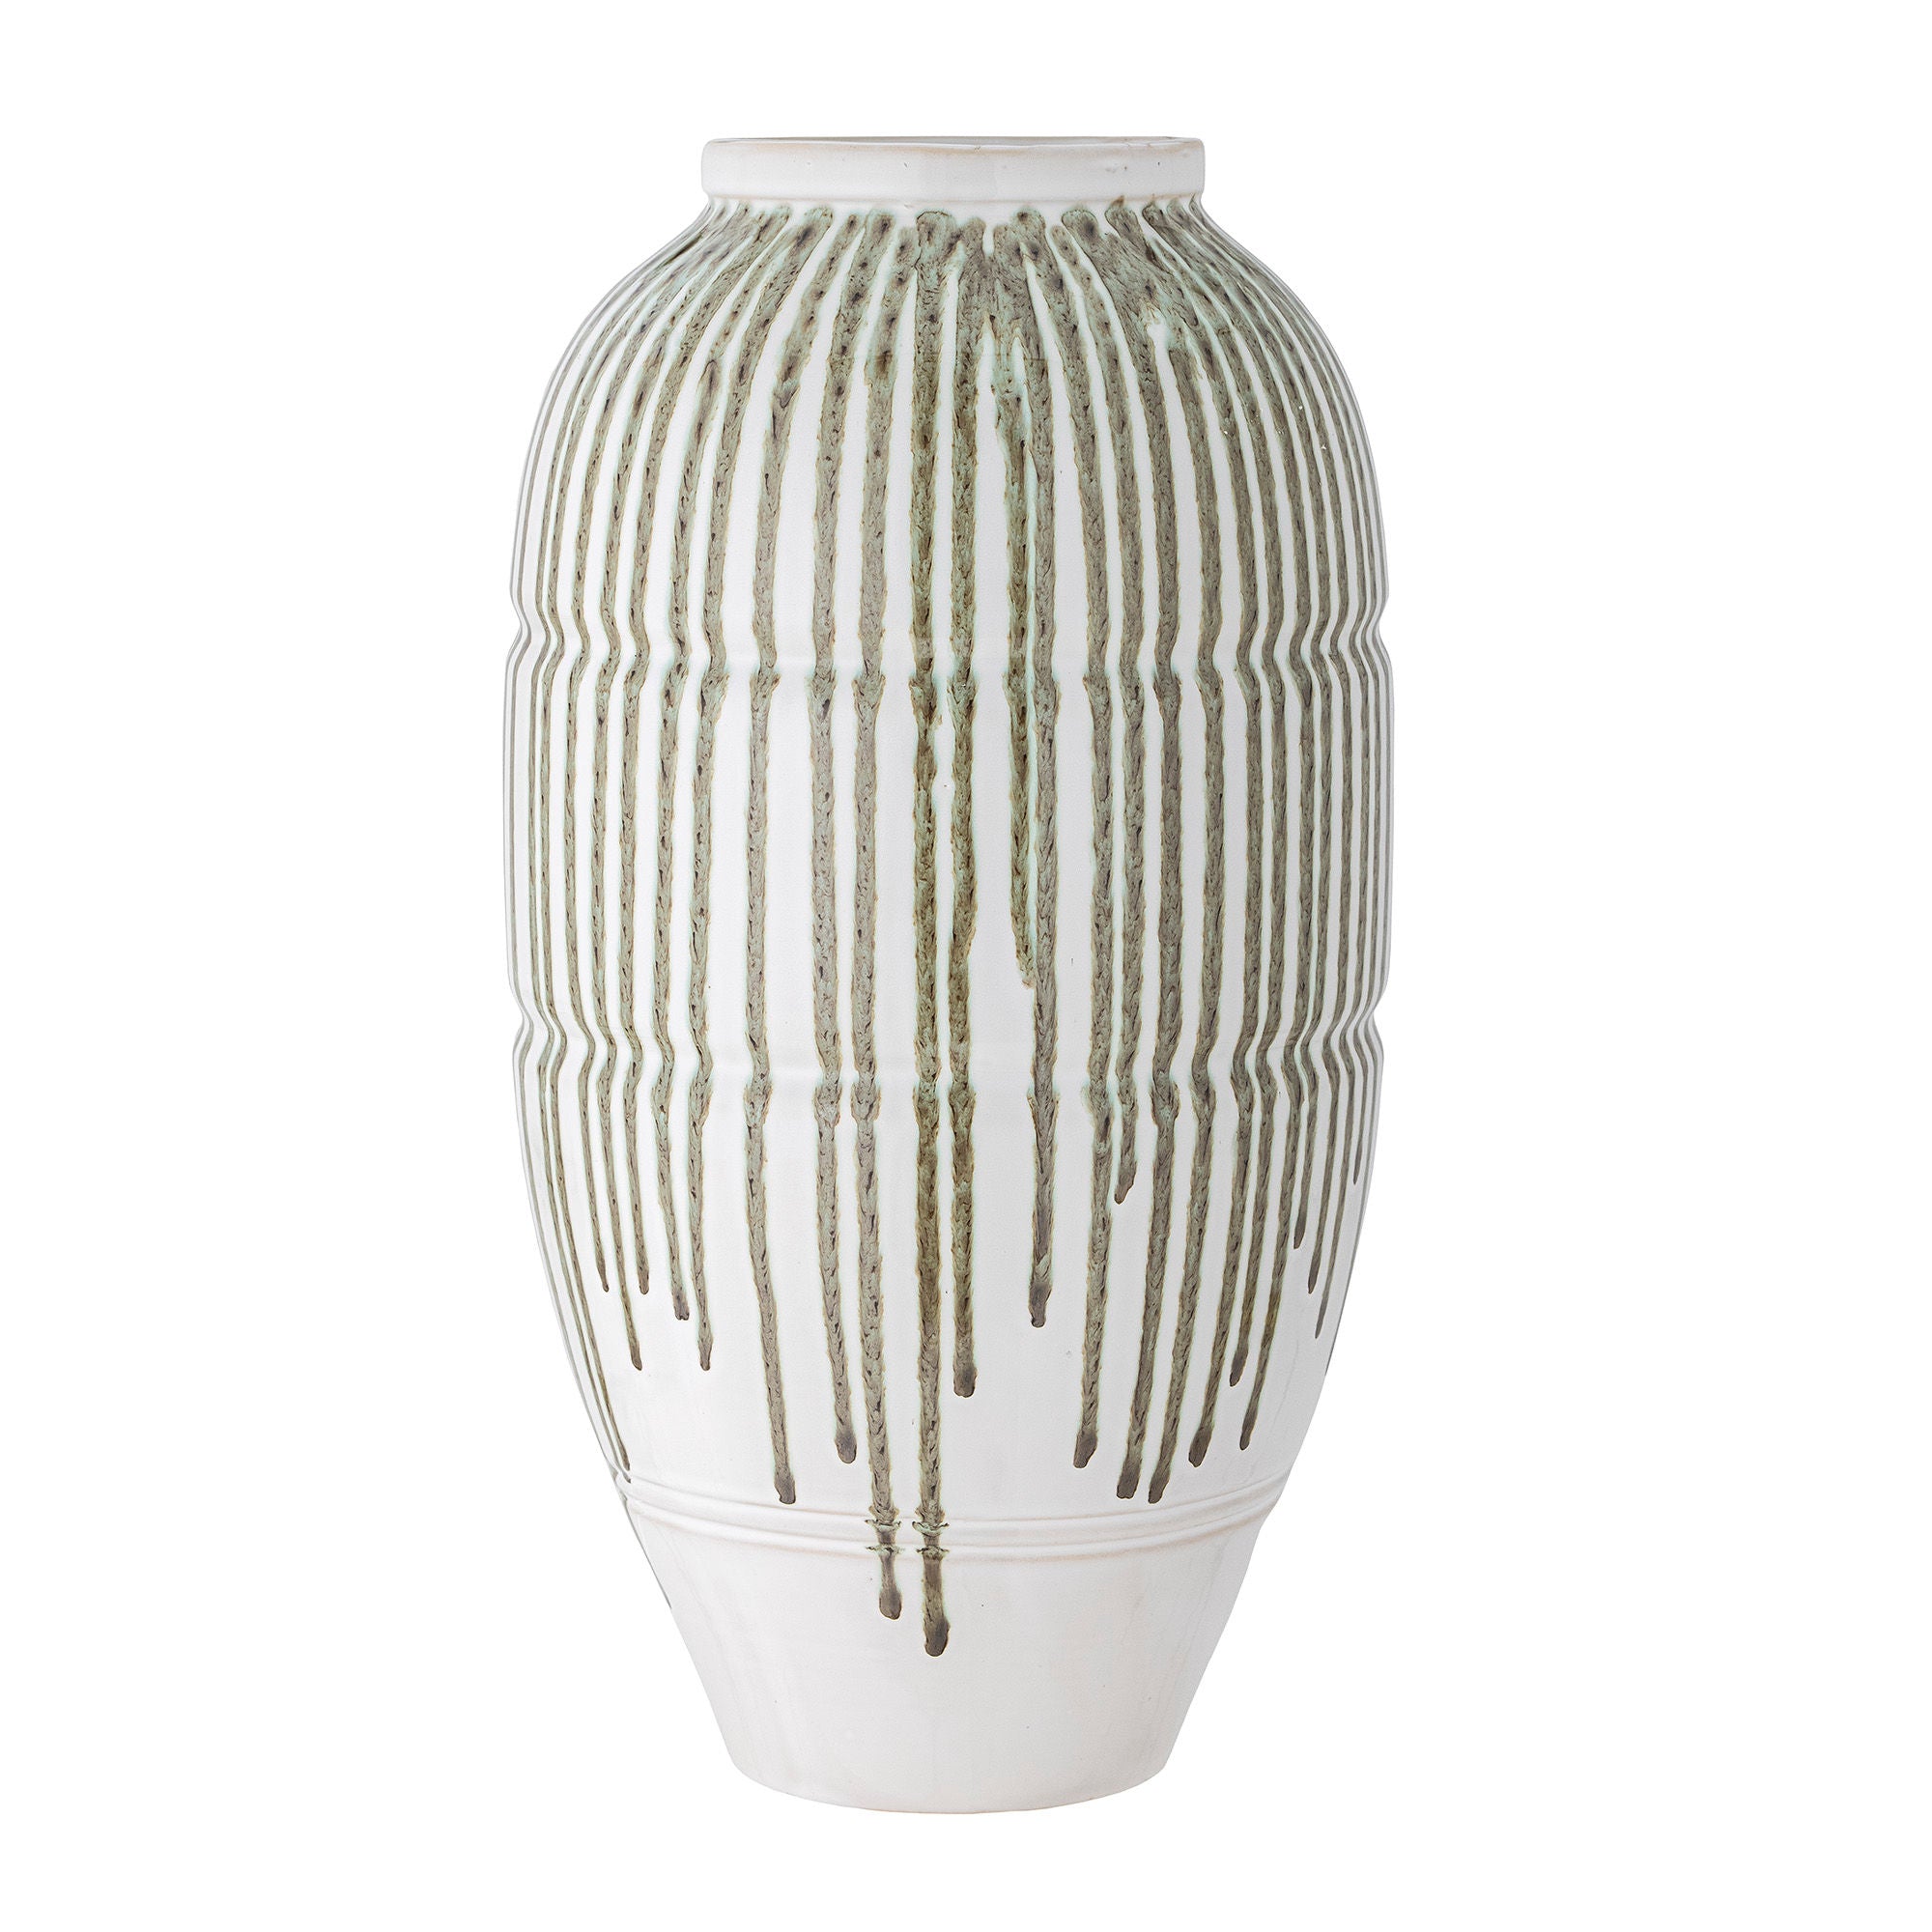 Die Scarlet Vase von Creative Collection ist eine hohe und wunderschöne handdekorierte Vase in Weiß mit einer grünen Laufglasur, perfekt für den Boden oder den Tisch und jedes Stück ein Unikat.